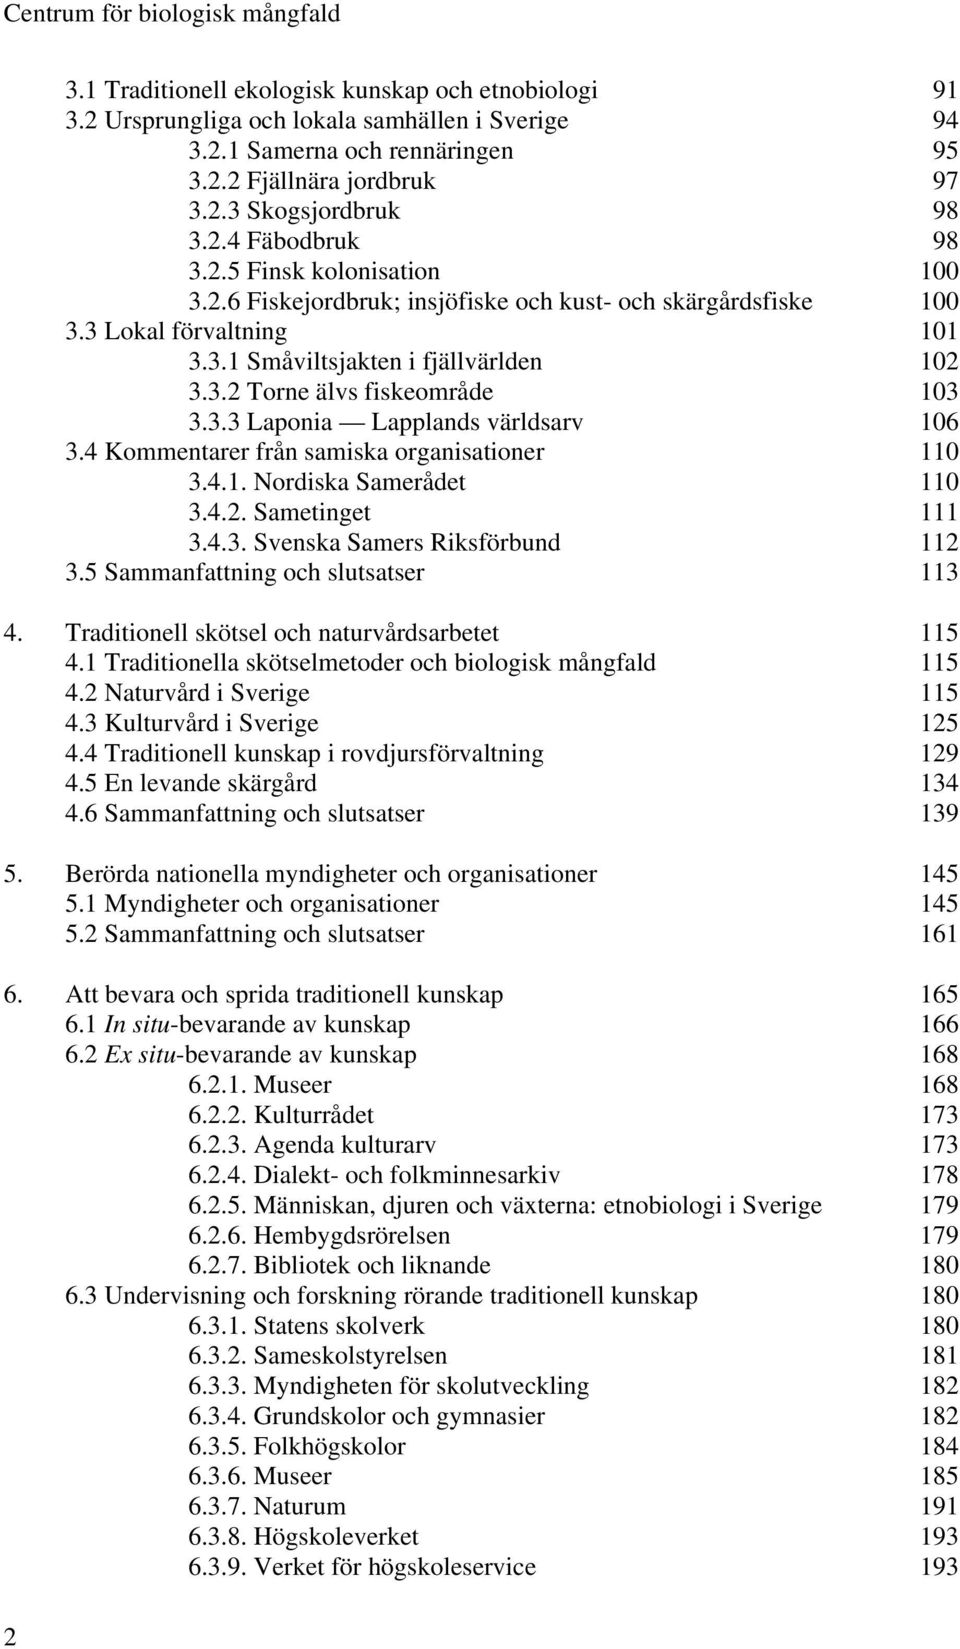 3.2 Torne älvs fiskeområde 103 3.3.3 Laponia Lapplands världsarv 106 3.4 Kommentarer från samiska organisationer 110 3.4.1. Nordiska Samerådet 110 3.4.2. Sametinget 111 3.4.3. Svenska Samers Riksförbund 112 3.